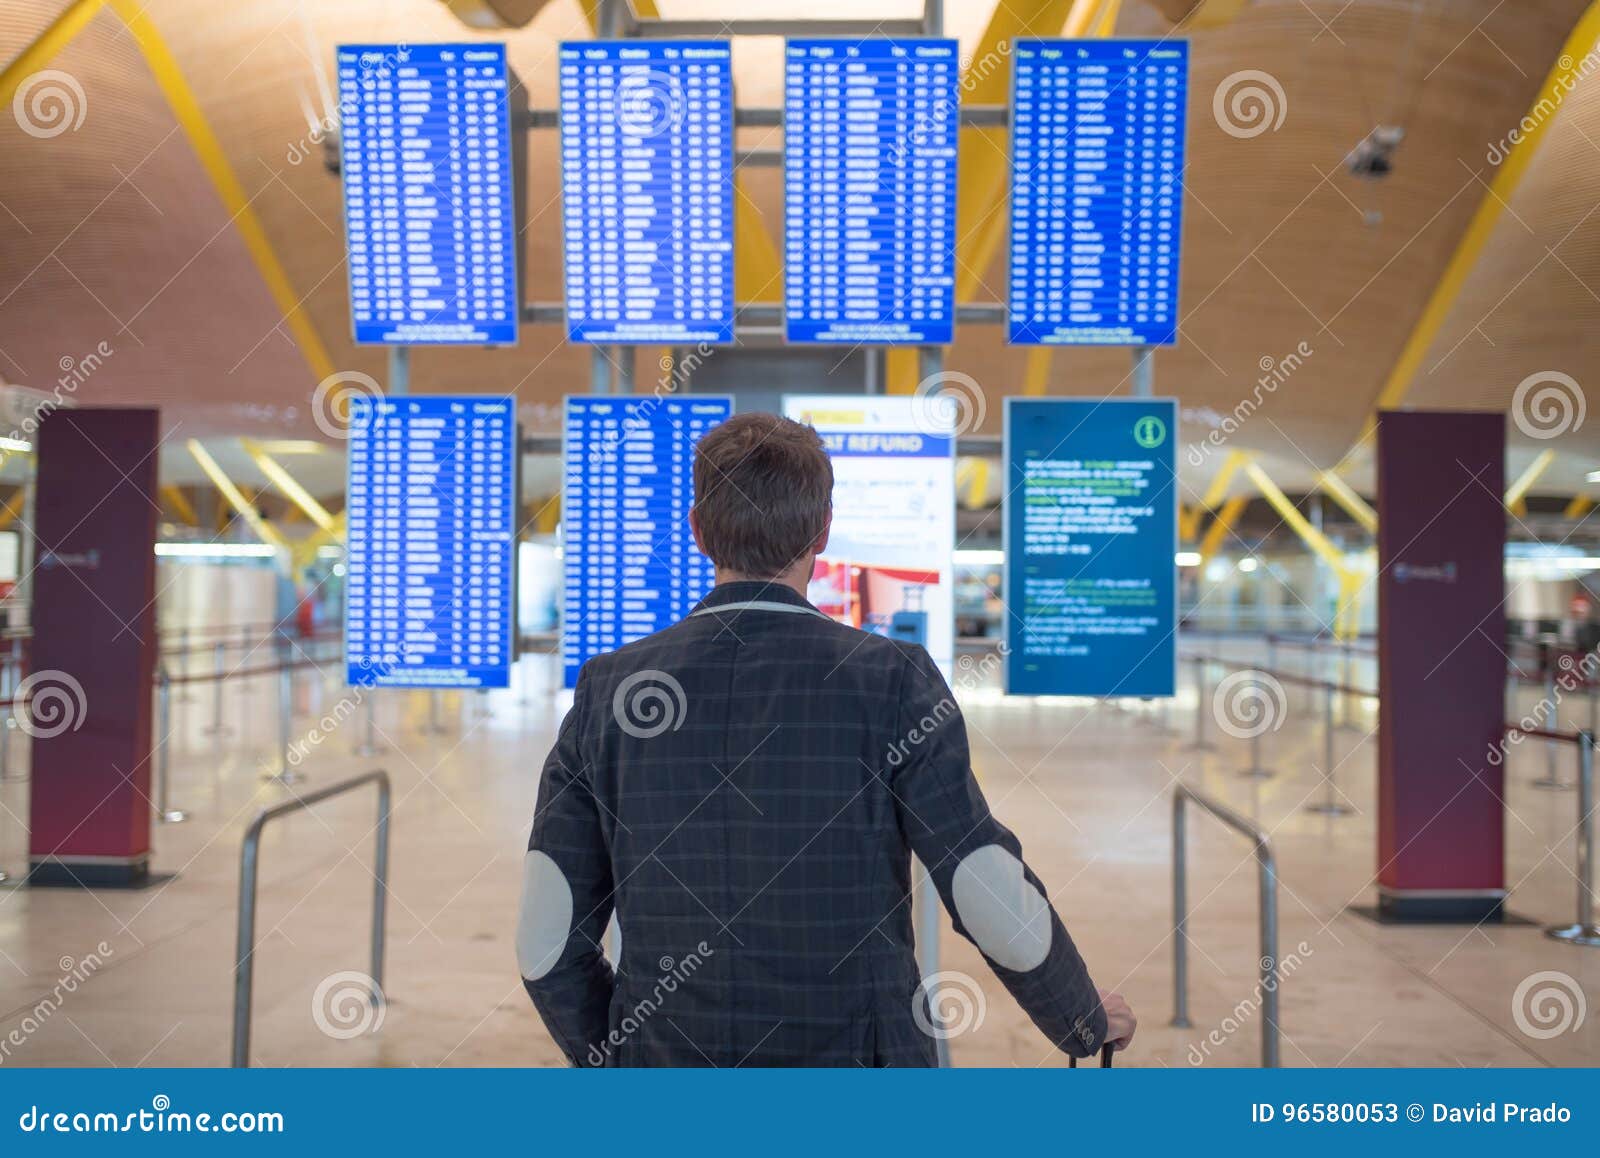 Пункт пересадки. Информационная панель в аэропорту. Timetable at the Airport. Транзитный пассажир как человек это.